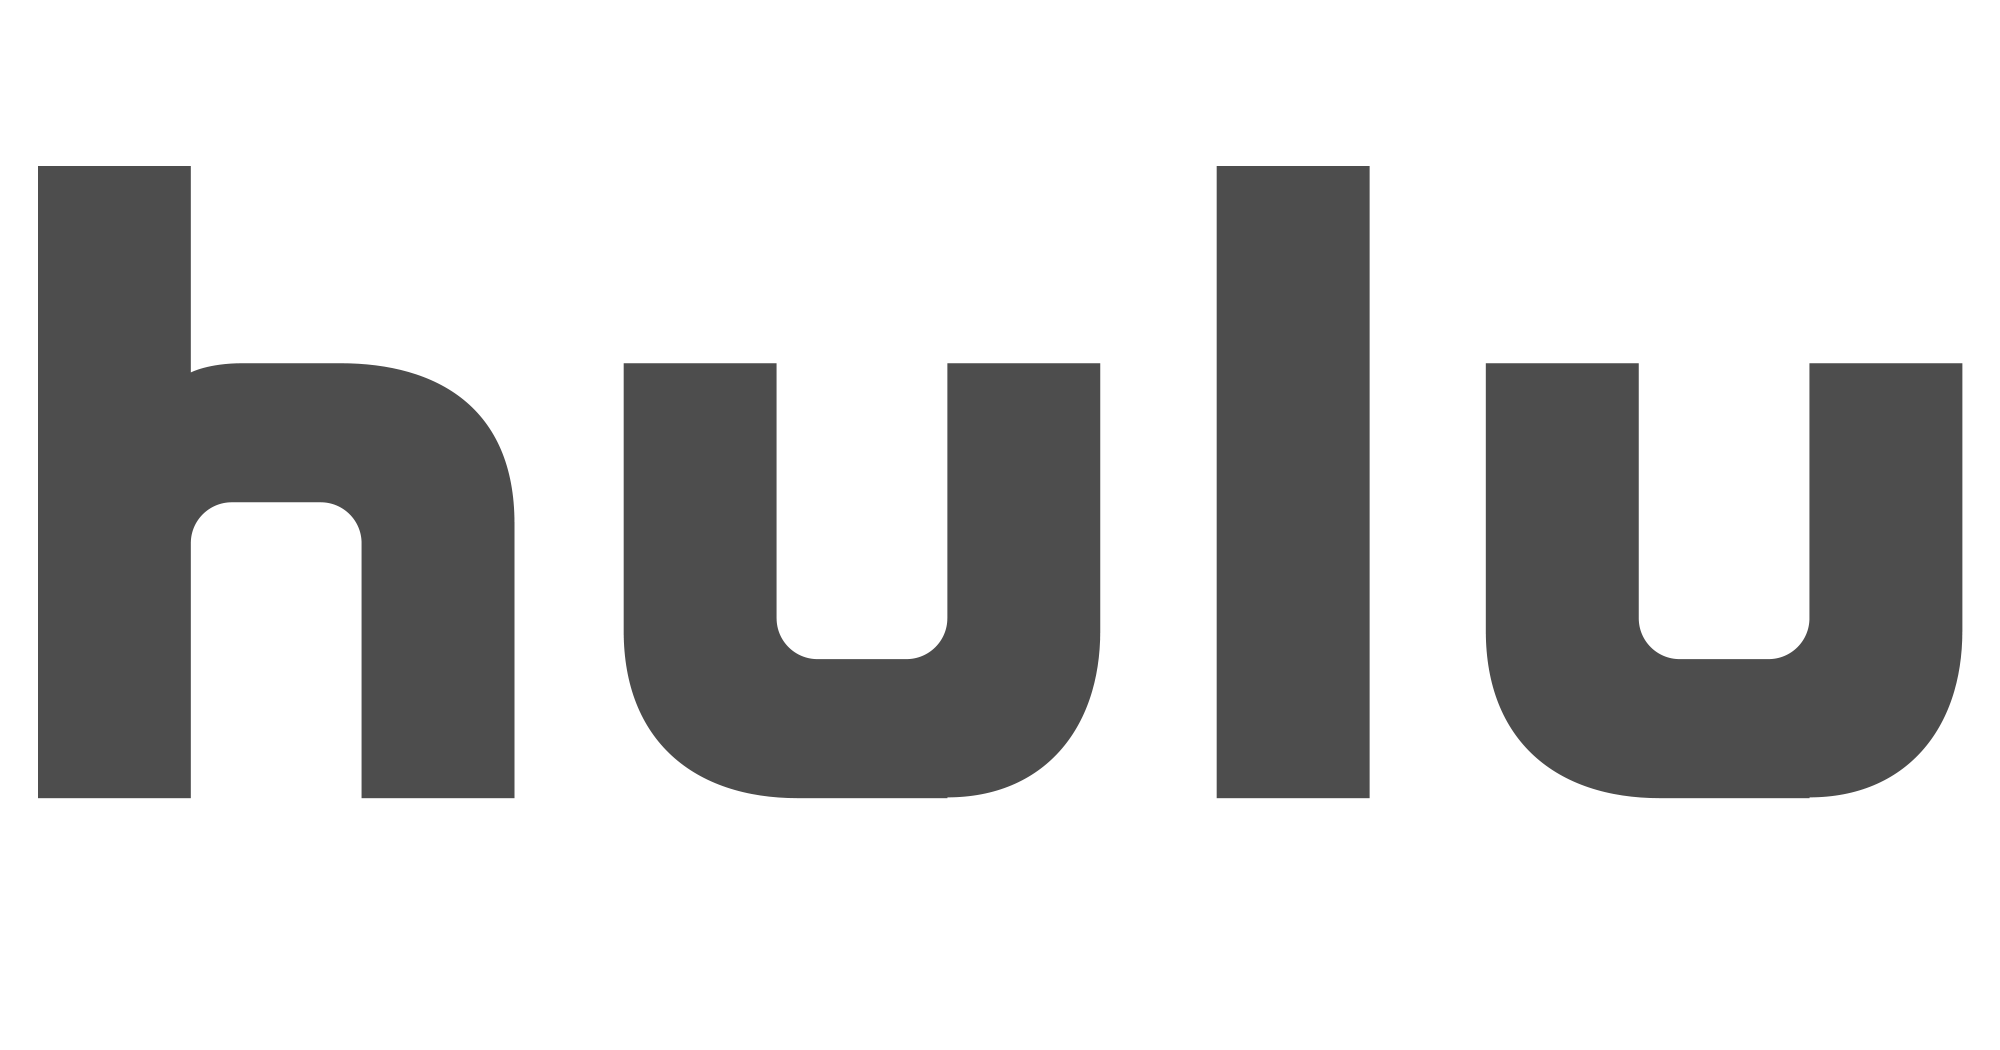 Hulu.png